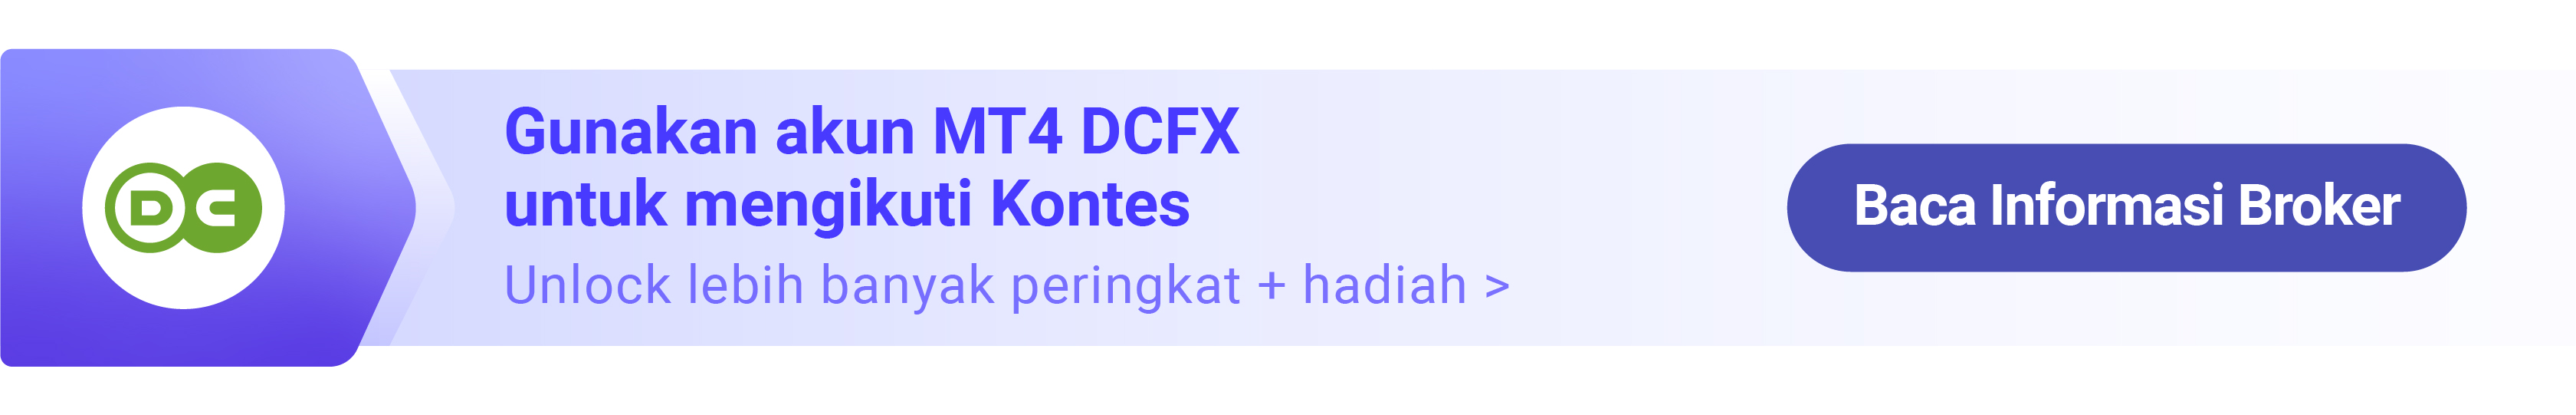 Juara Kontes Trading Grup DCFX Bulan Oktober, Trader Raden28 Ungkap Cara Menjadi Pemenang!